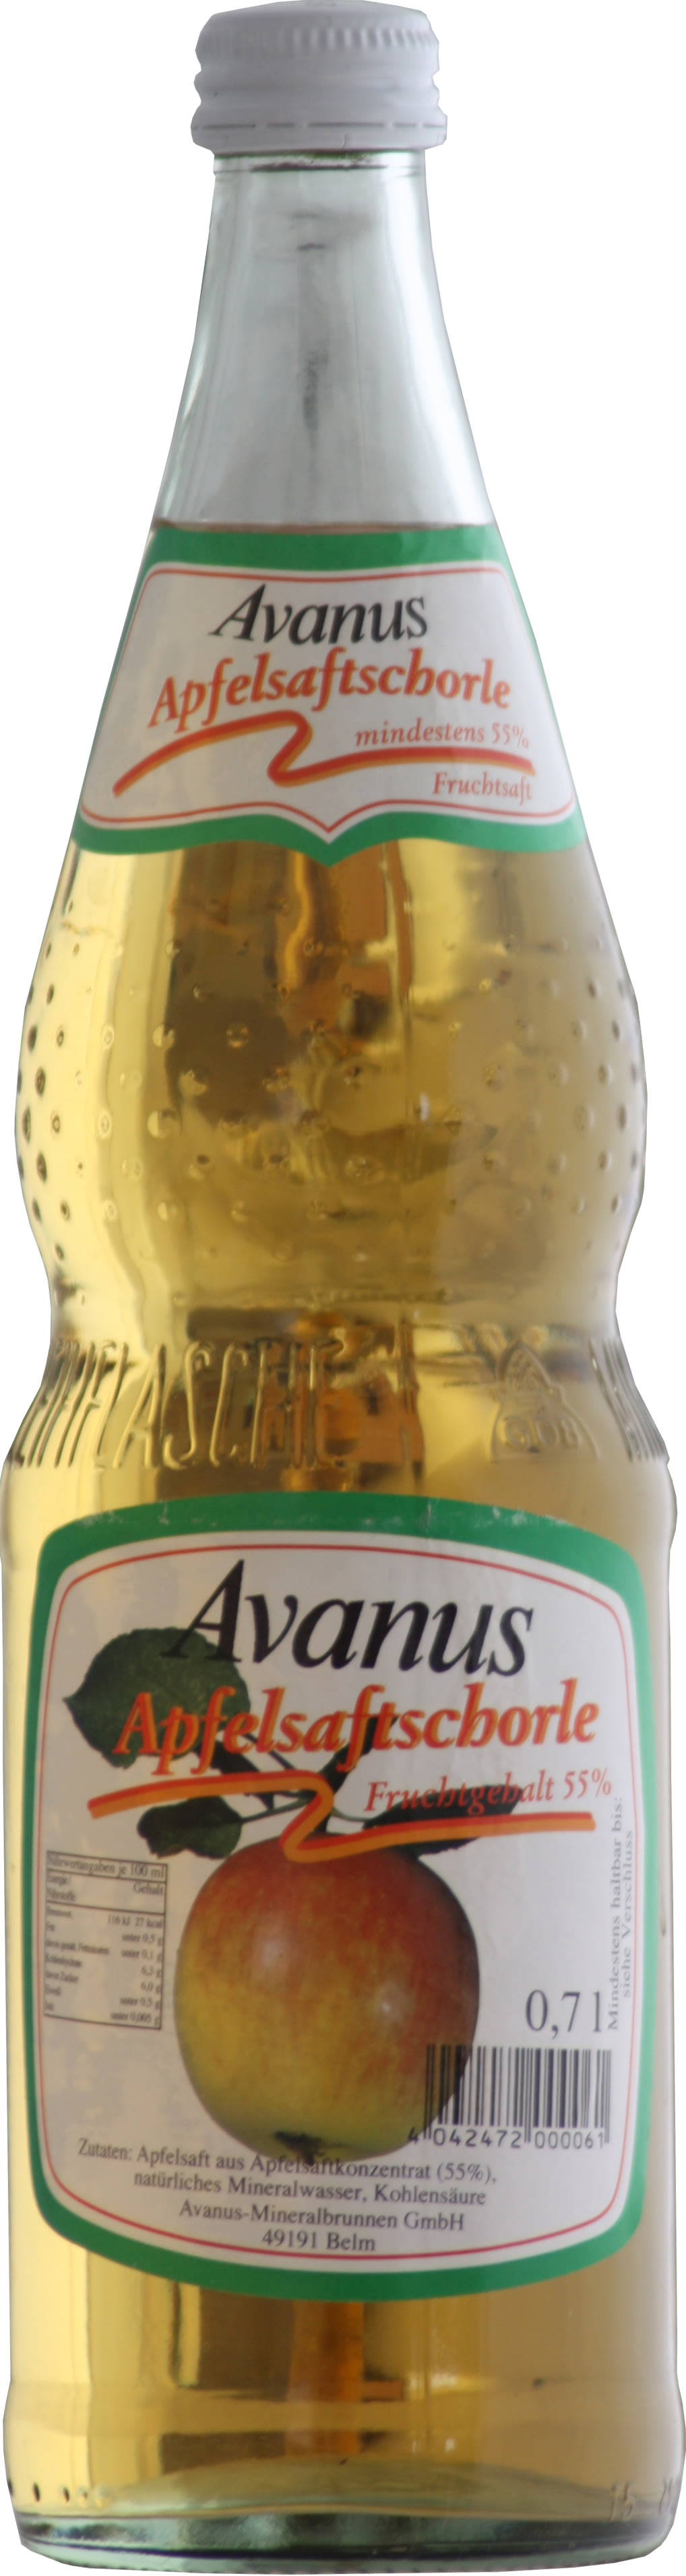 Avanus Apfelschorle Kasten 12 x 0,7 l Glas Mehrweg